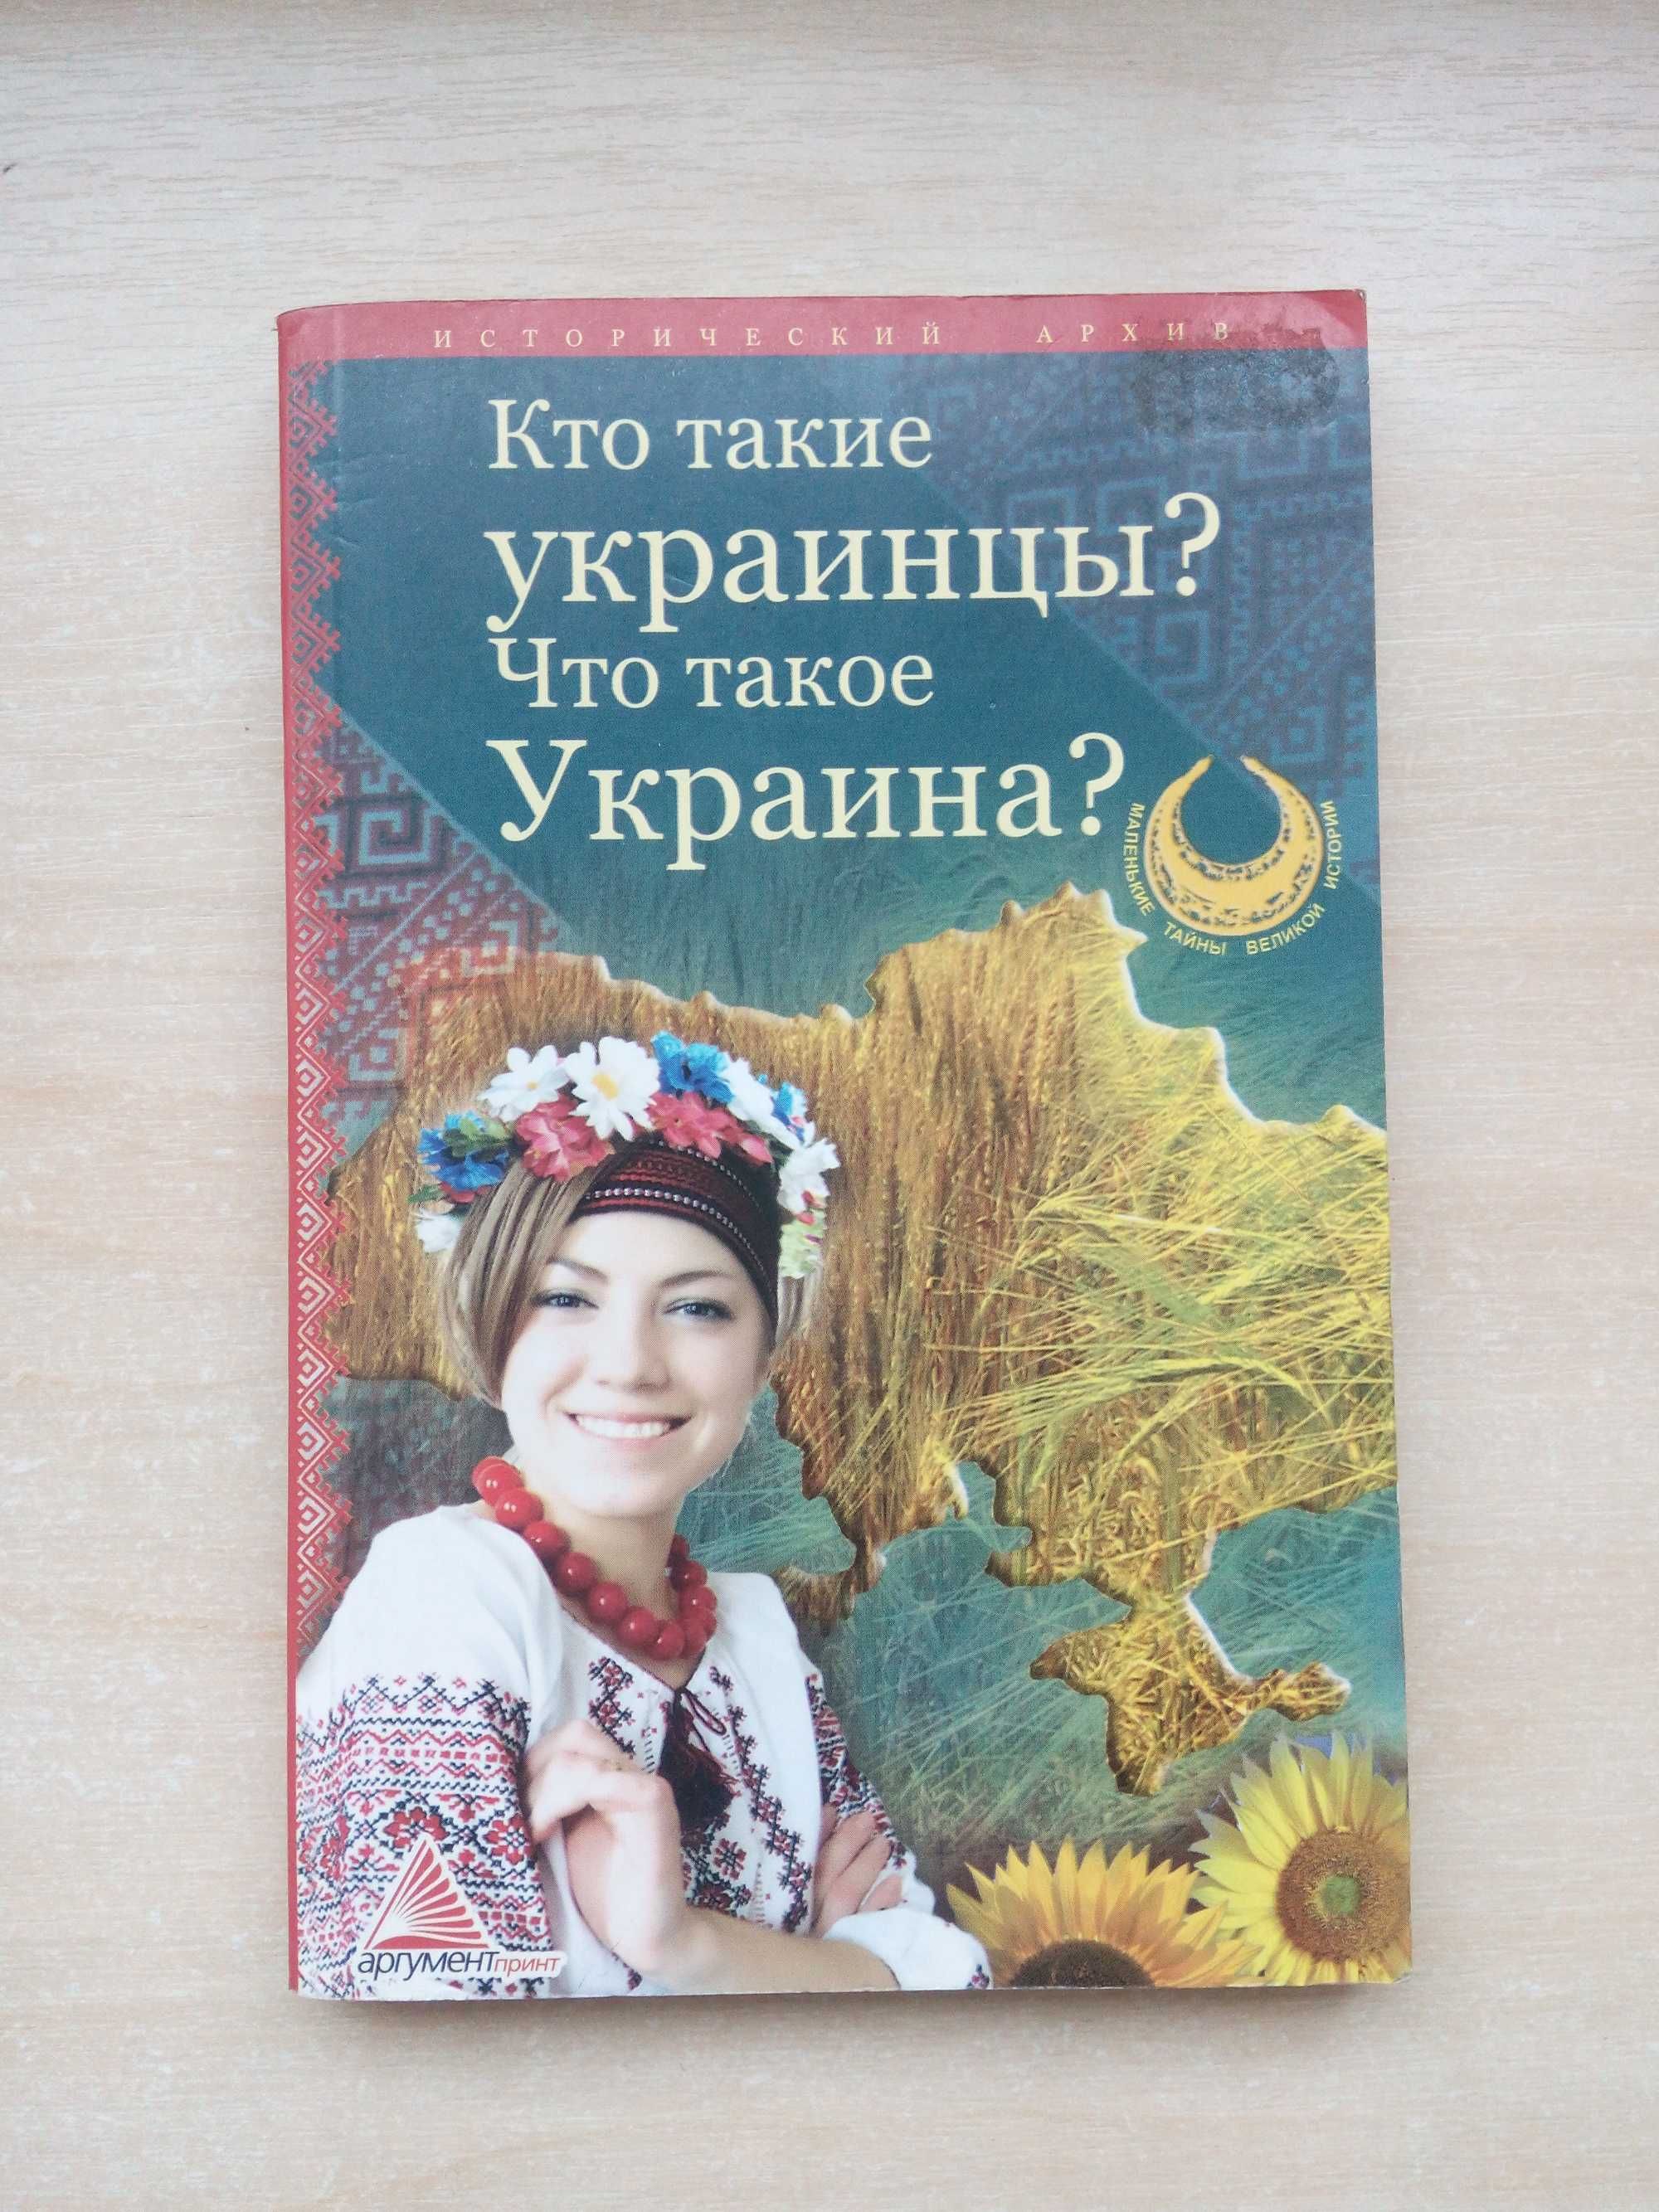 Книга "Кто такие украинцы? Что такое Украина?"